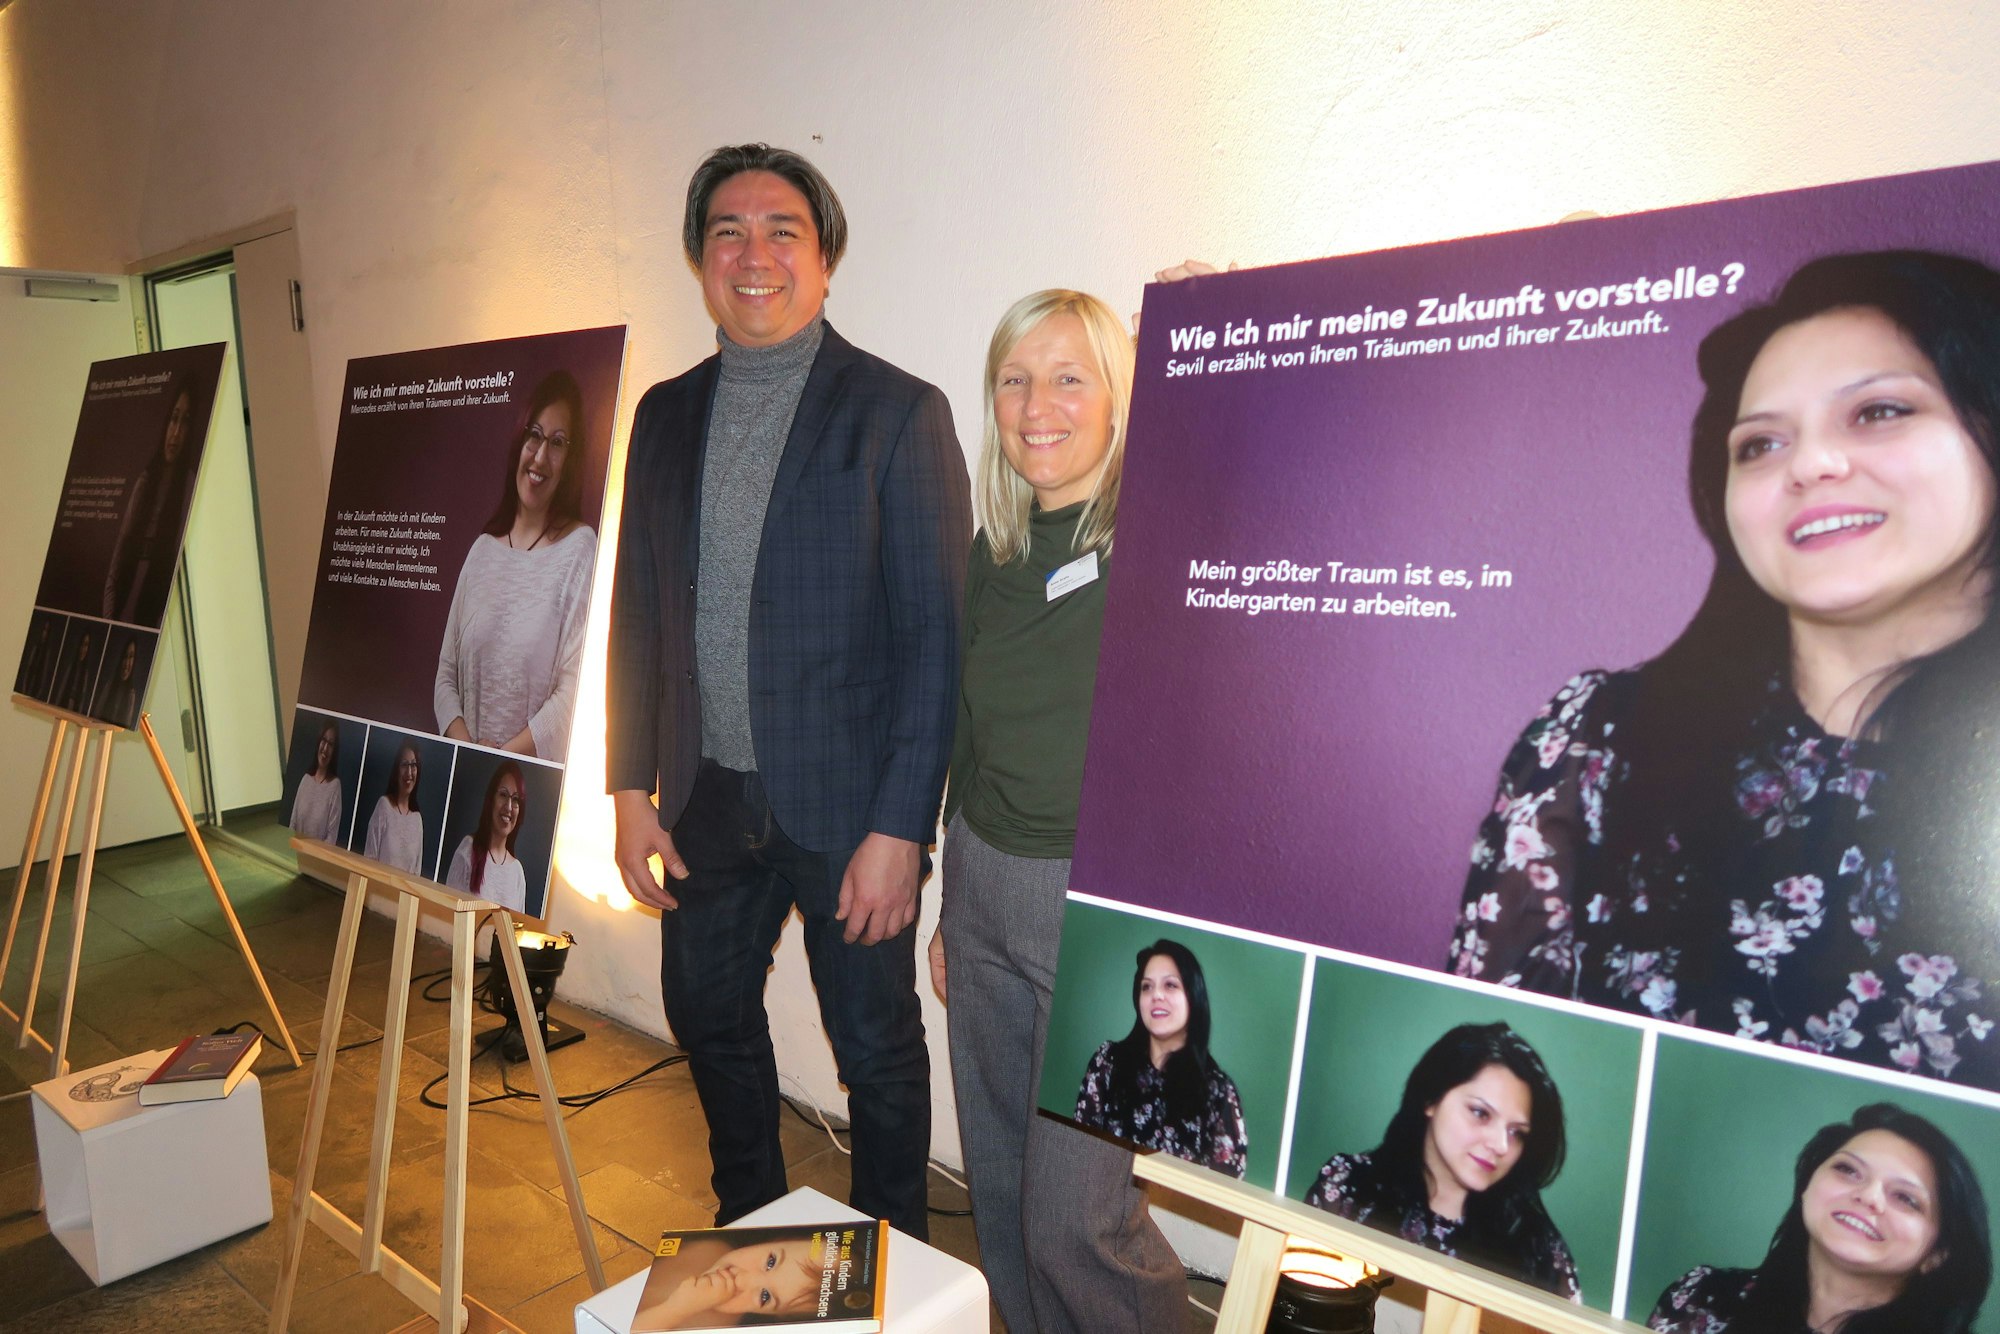 Jhon Jimenez und Anna Drahs in der Ausstellung. Neben ihm sind Plakate aufgestellt, auf denen Bilder von jungen Frauen zu sehen sind. Neben den Frauen sind Zitate von diesen dargestellt.